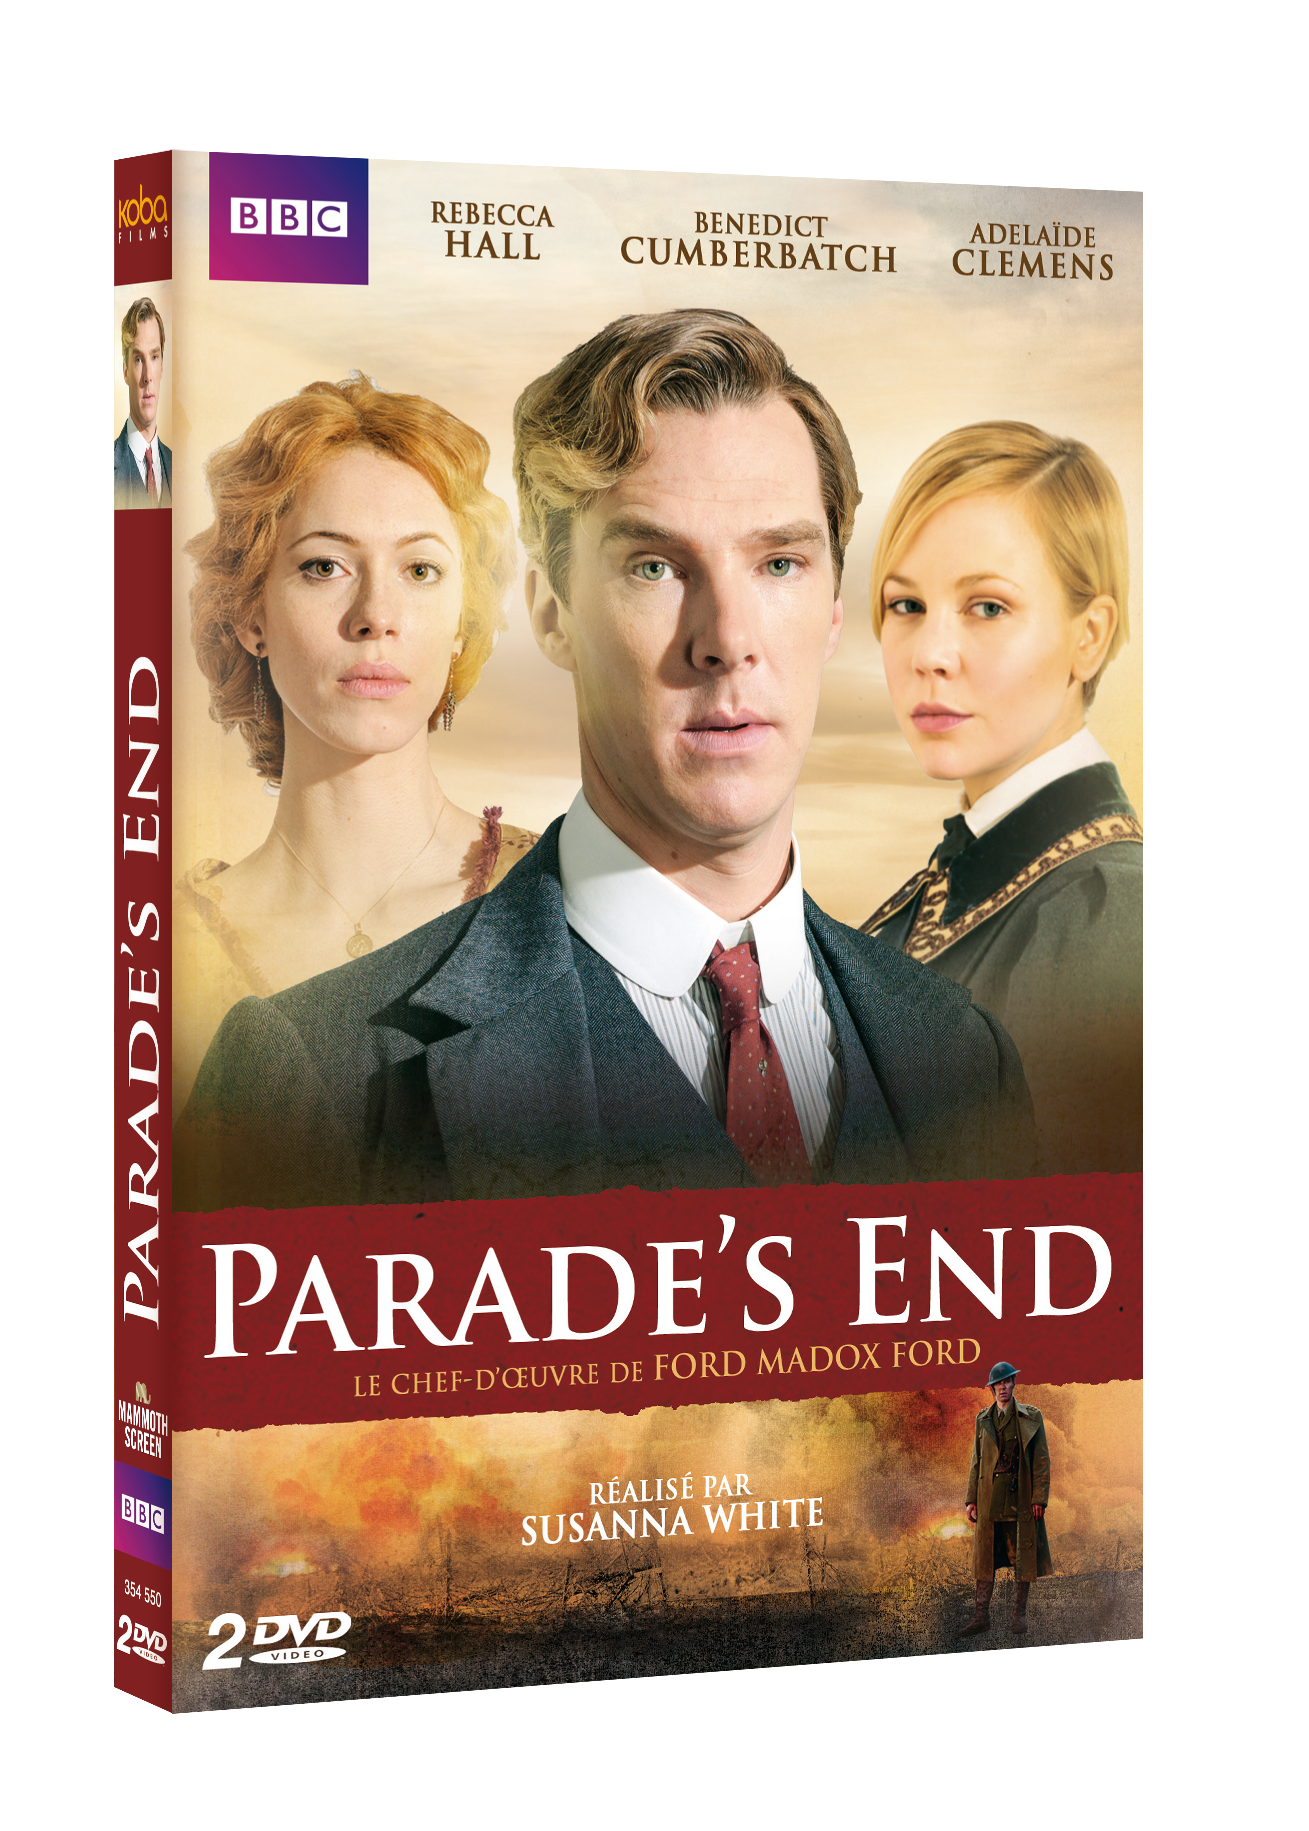 PARADE'S END (2 DVD)